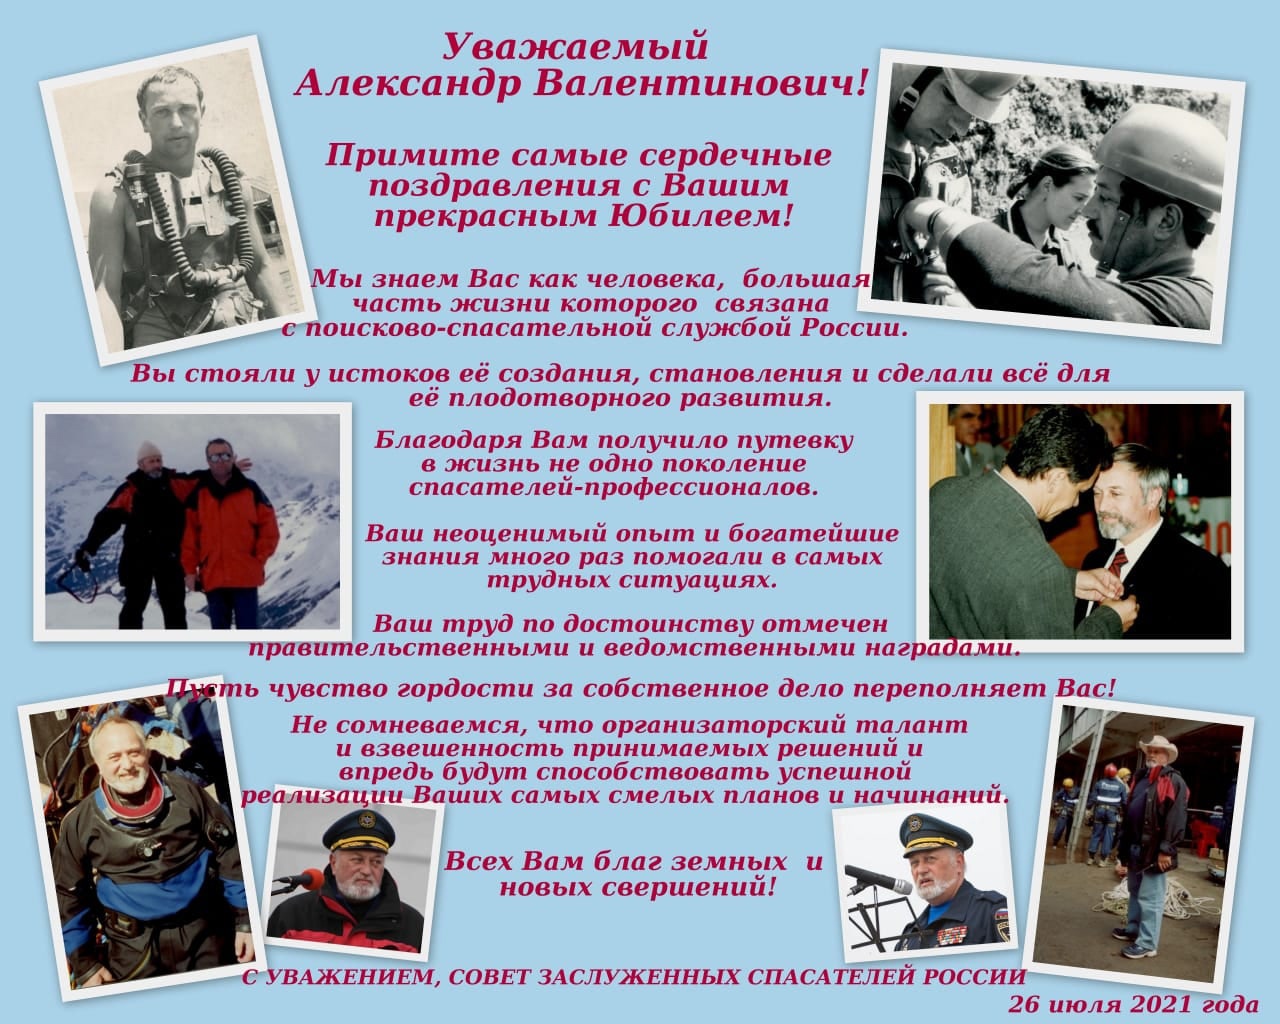 Поздравляем Курсакова Александра Валентиновича с юбилеем!